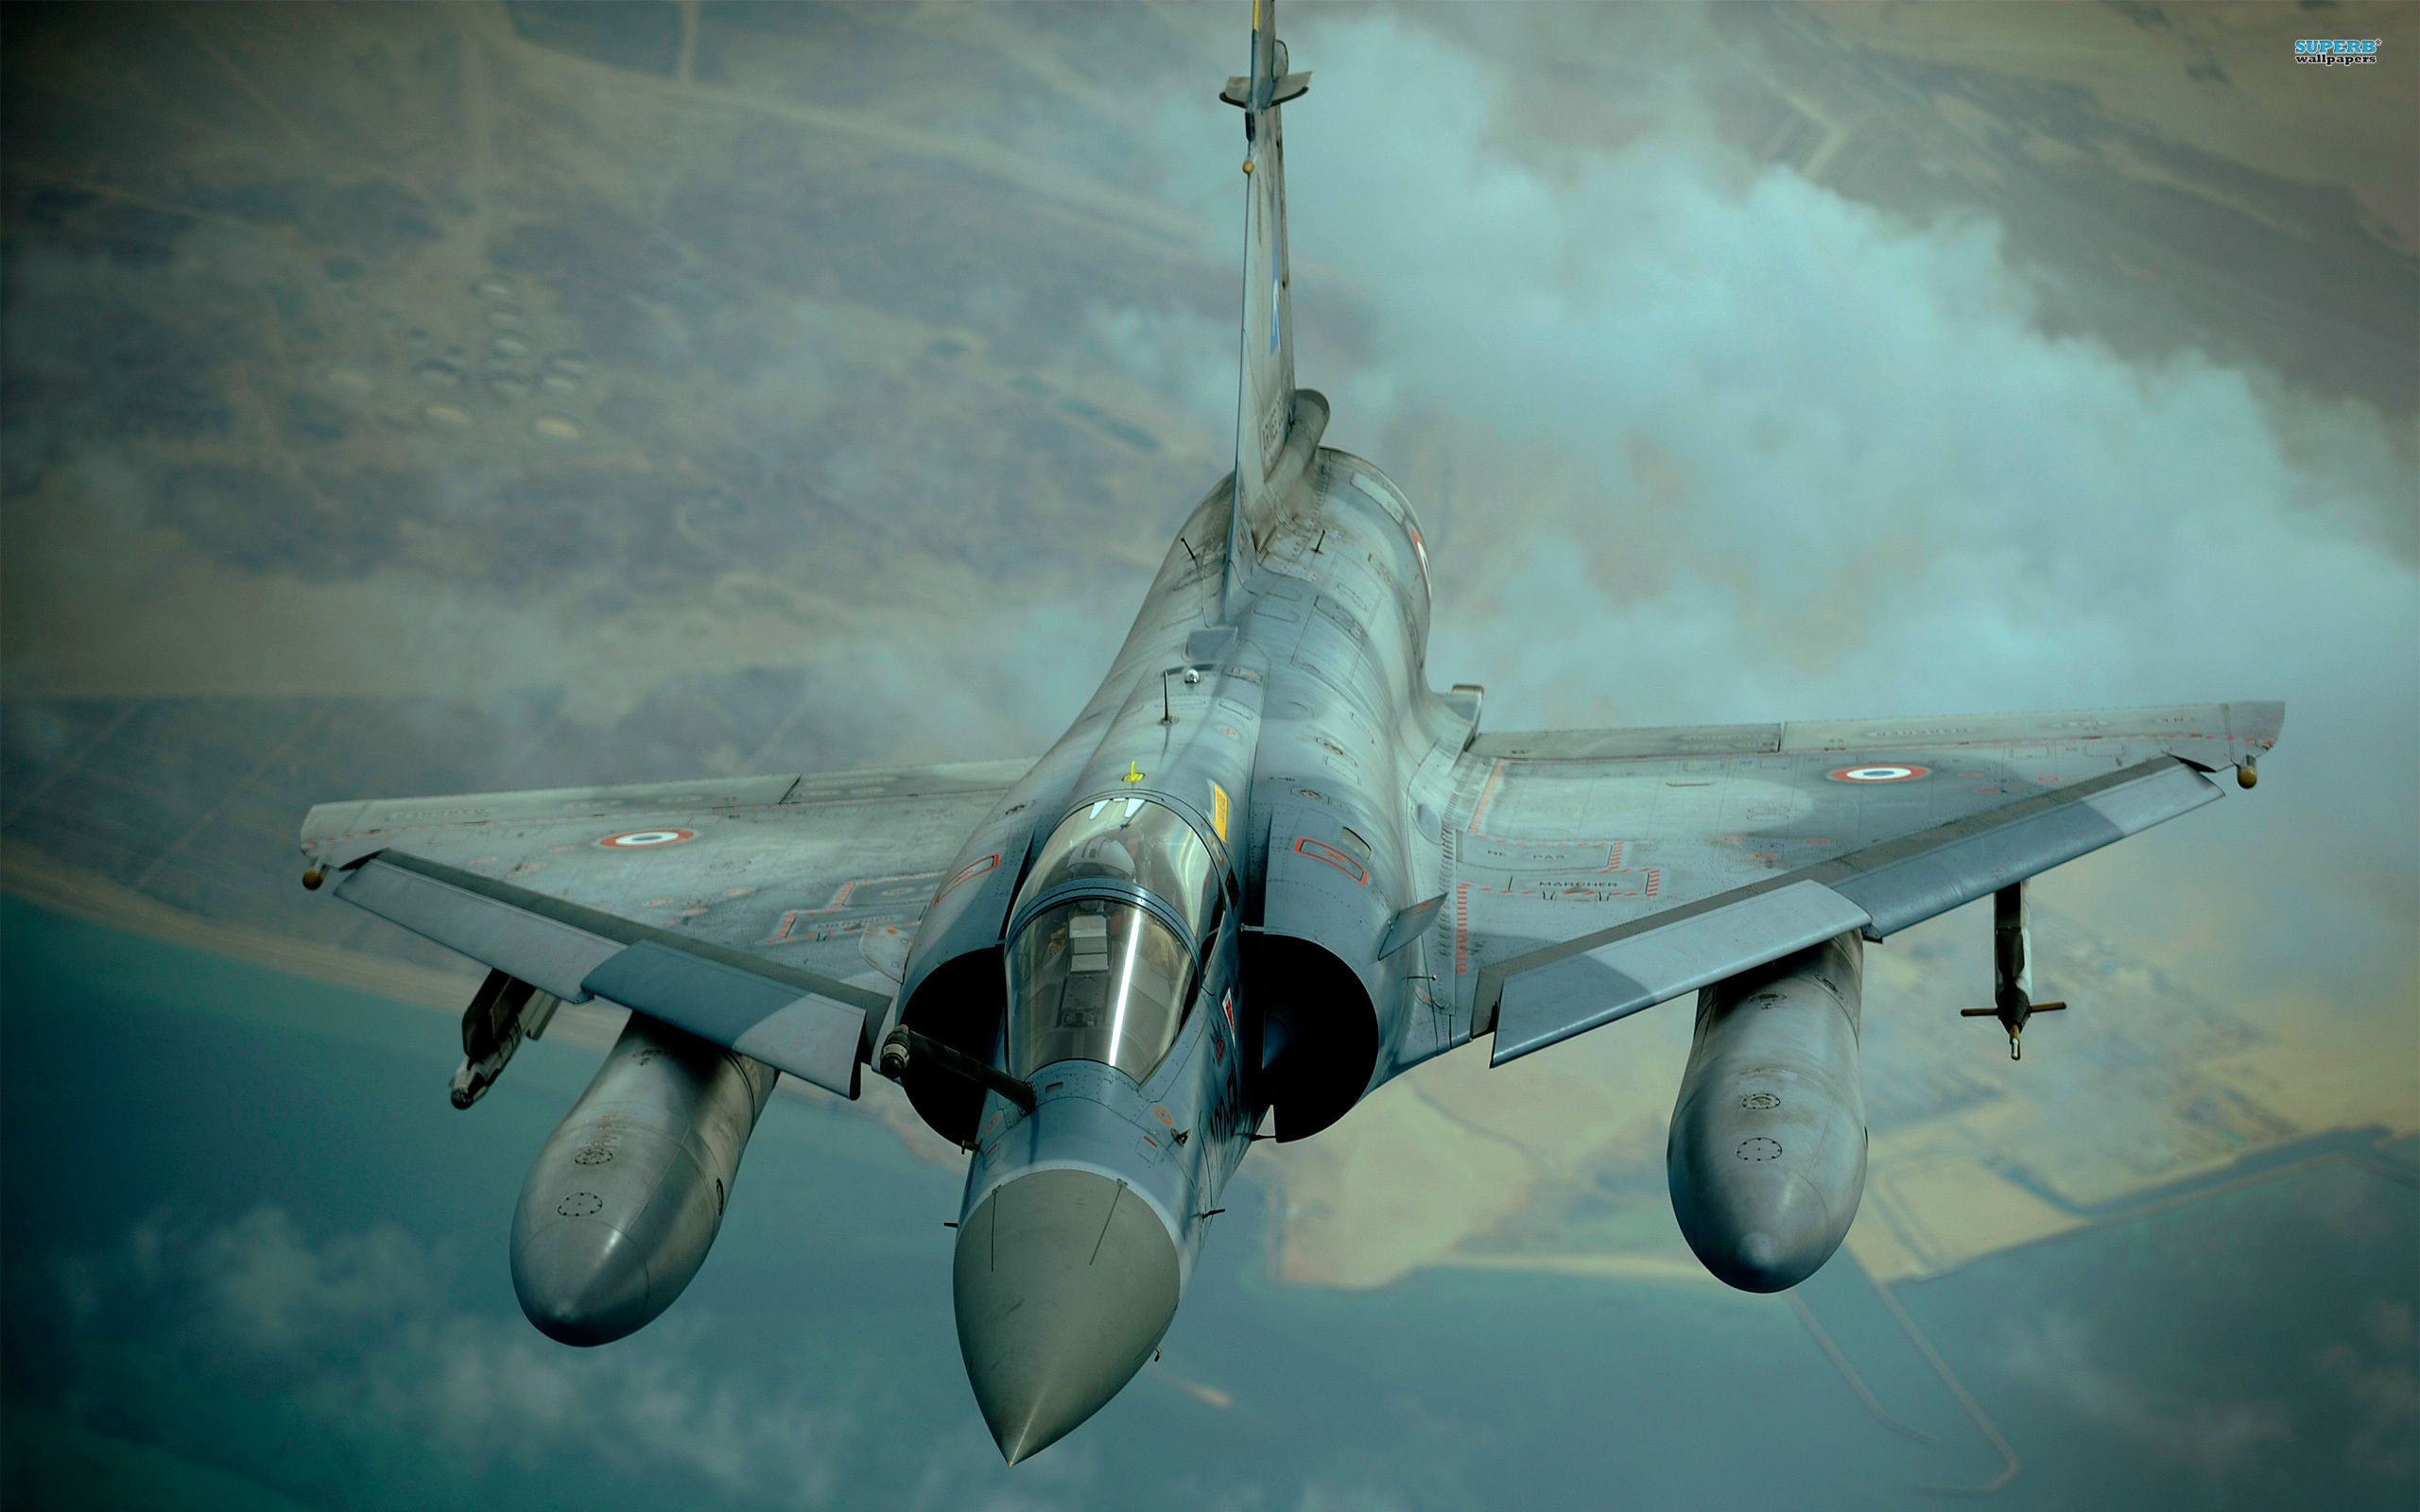 Dassault Mirage 2000 wallpaper - Aircraft wallpapers -